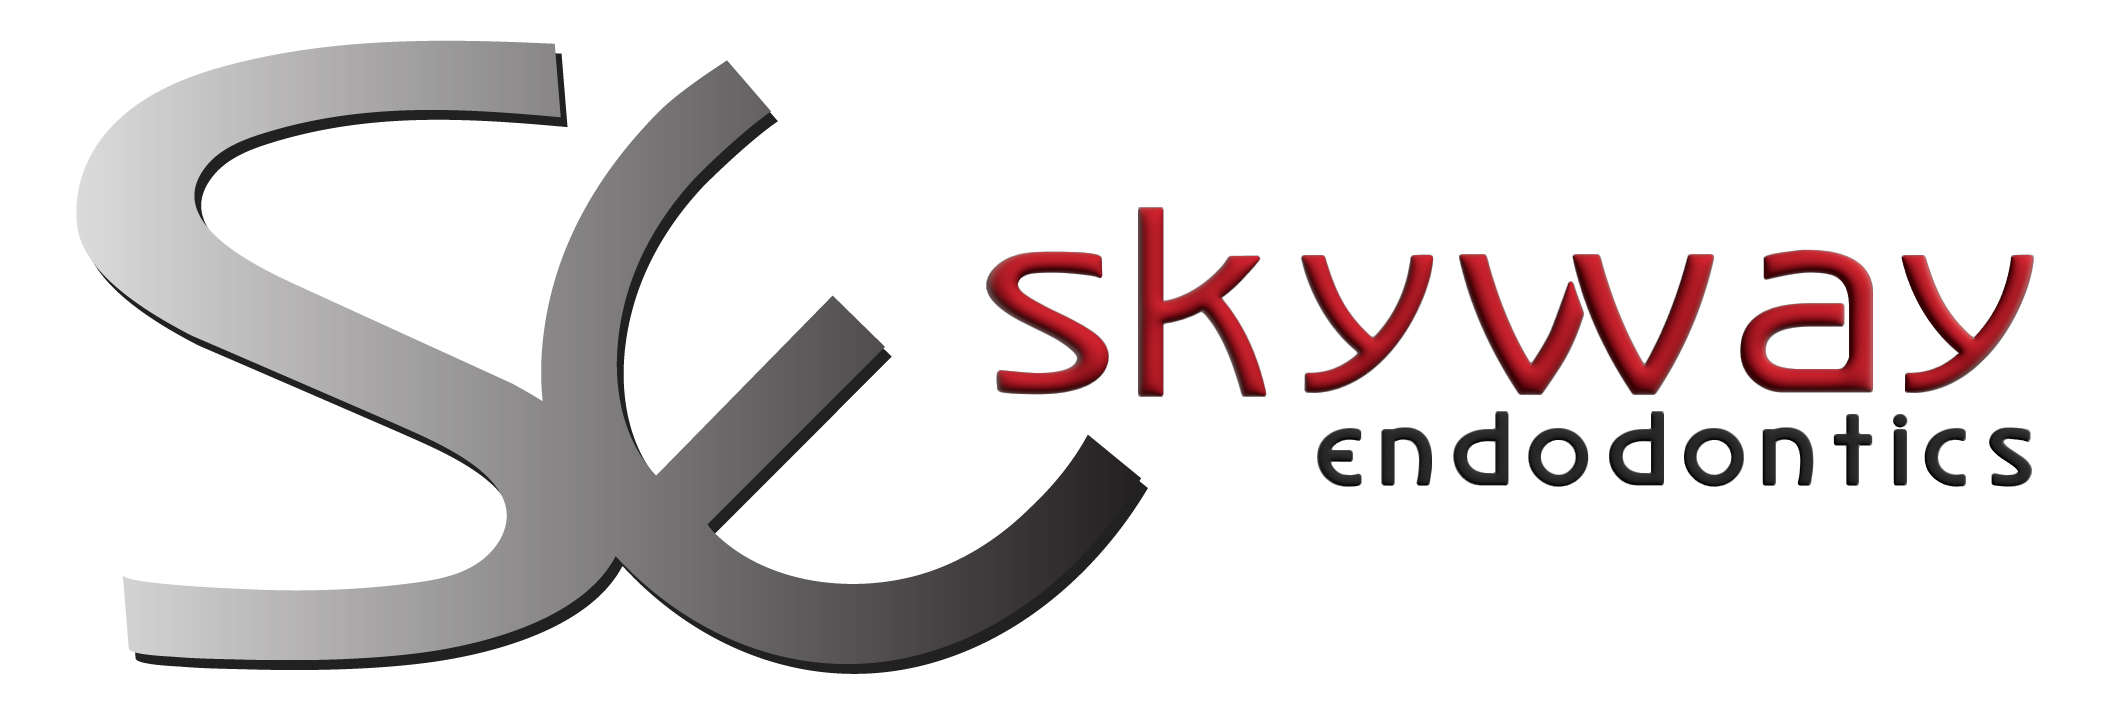 skyway endodontics logo